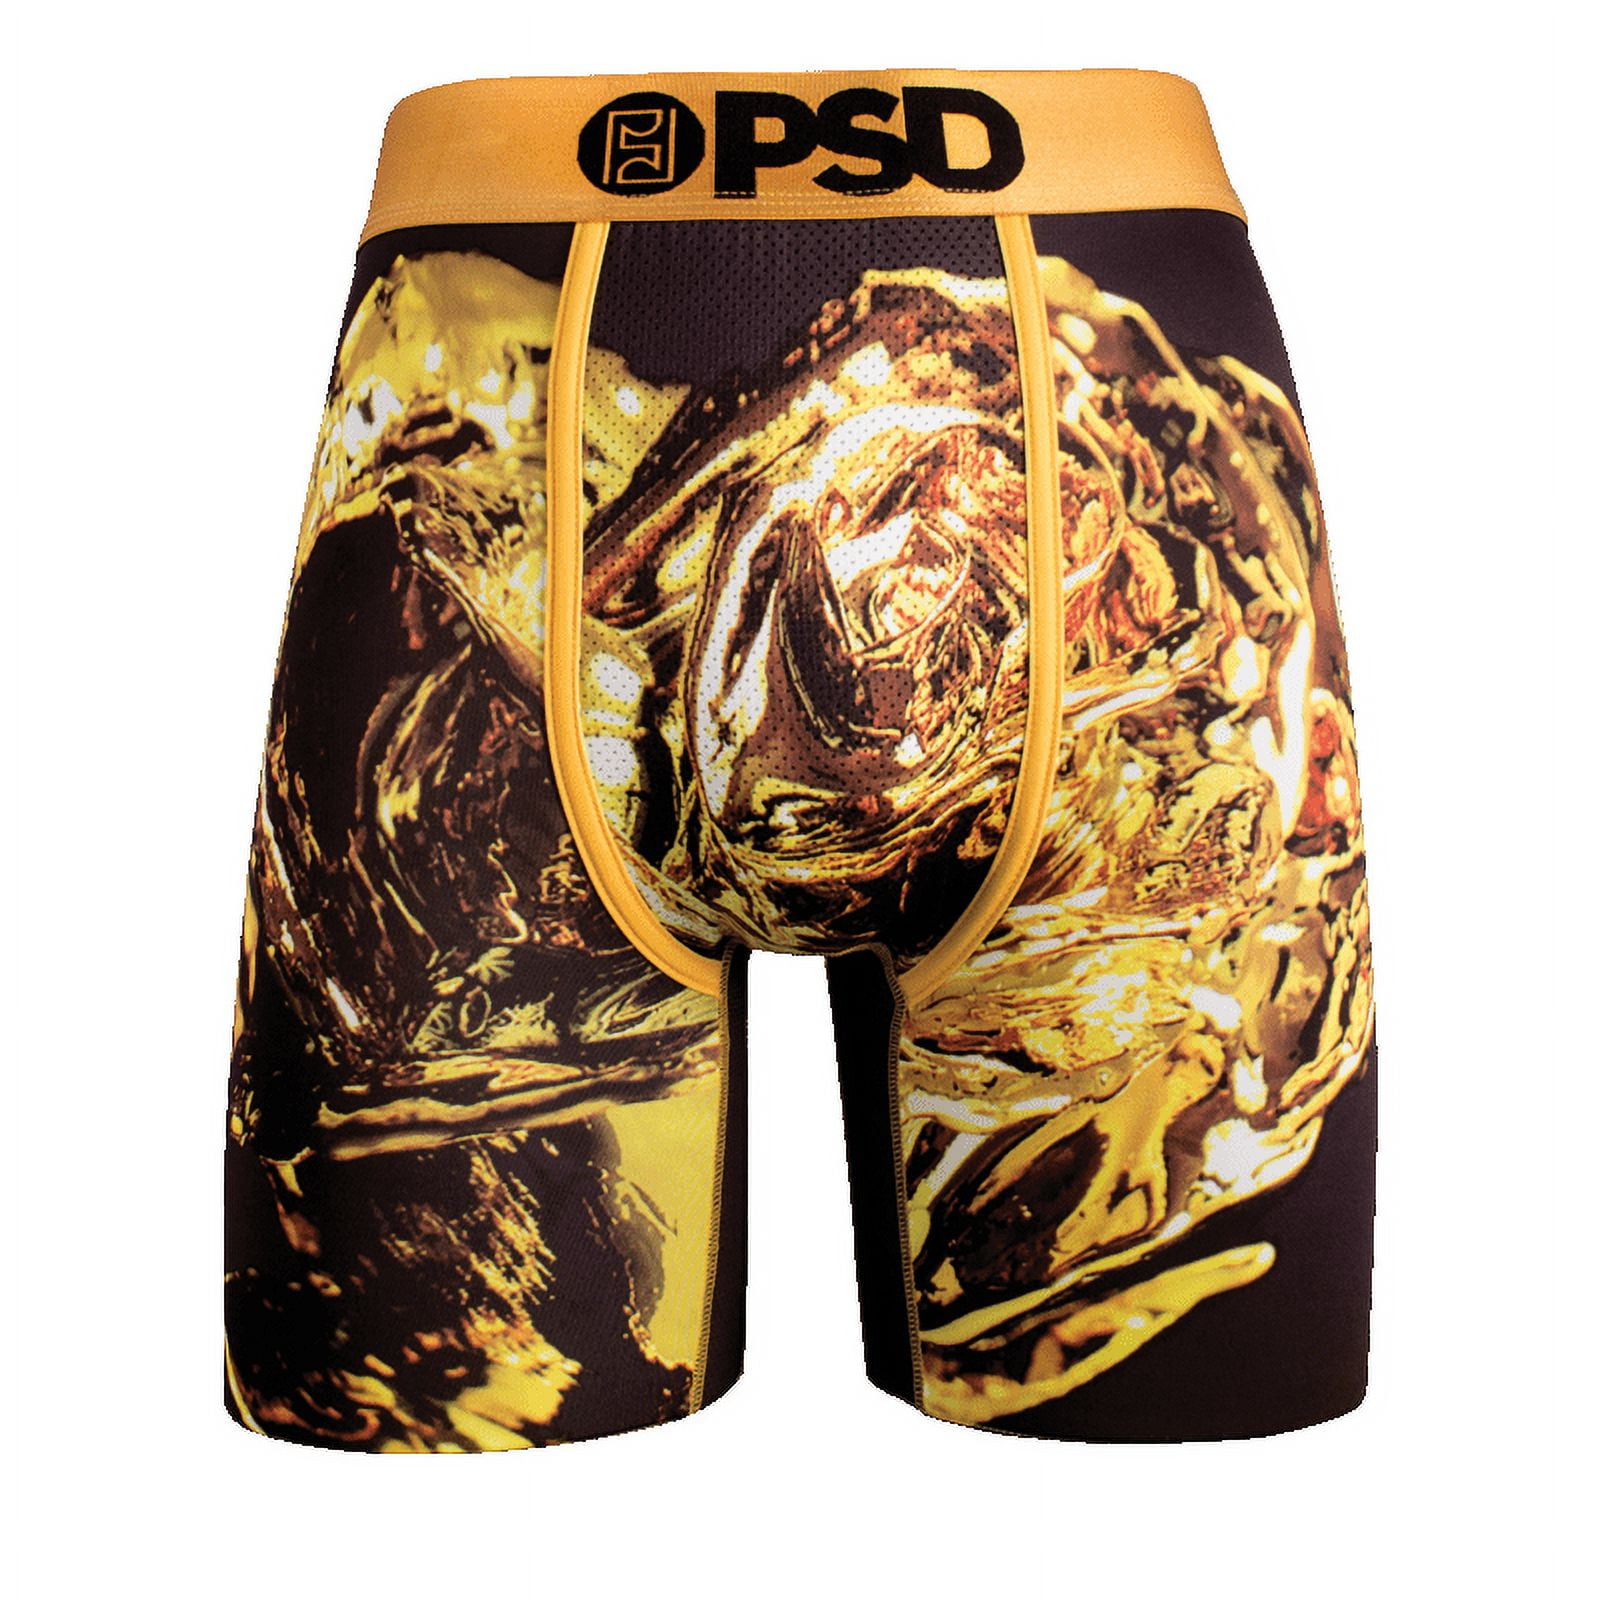 PSD Underwear Men's Gold Rose Boxer Brief 11821010 Gold 